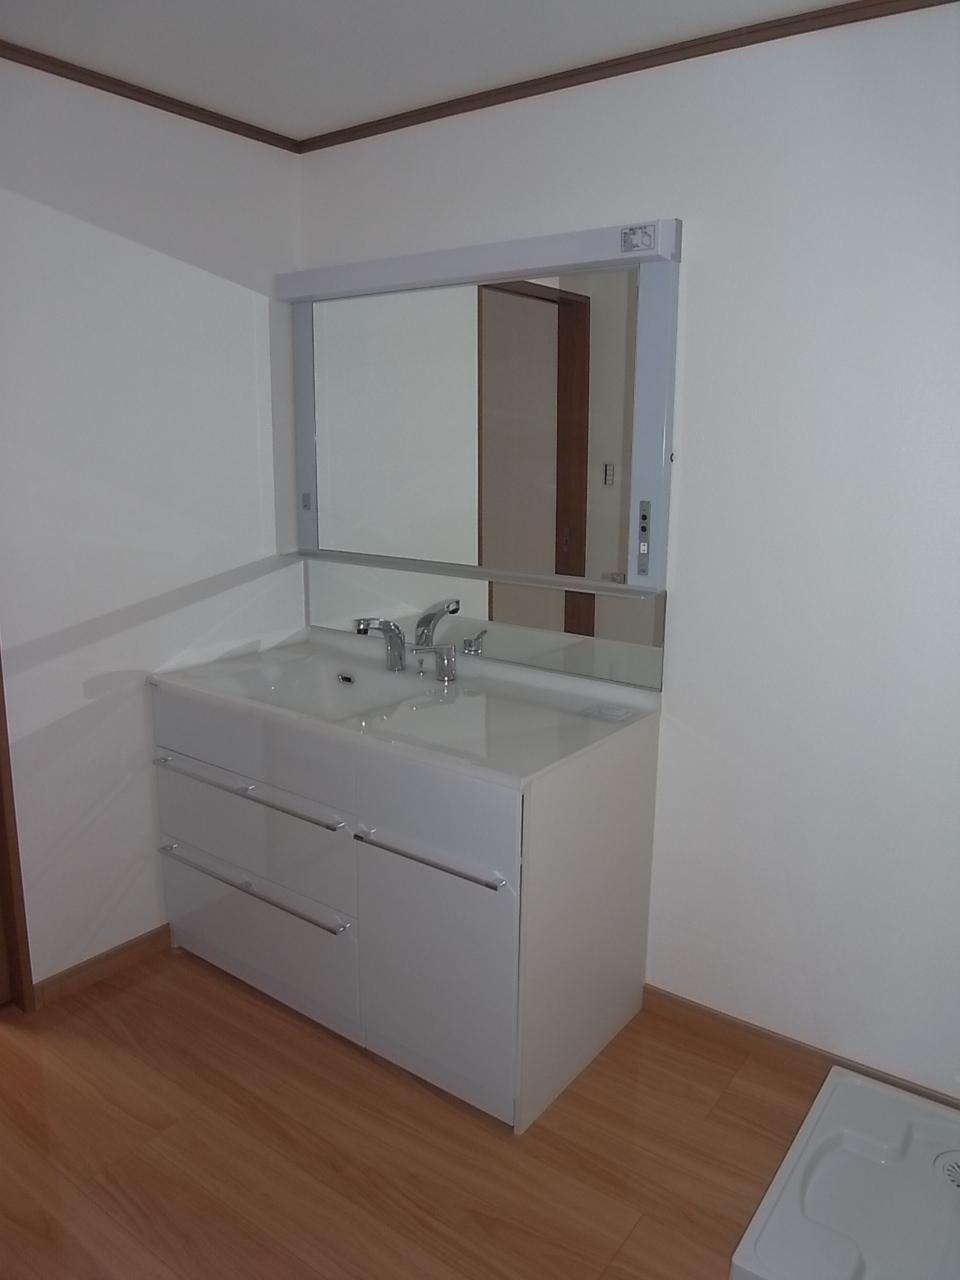 Wash basin, toilet. Vanity mirror is large